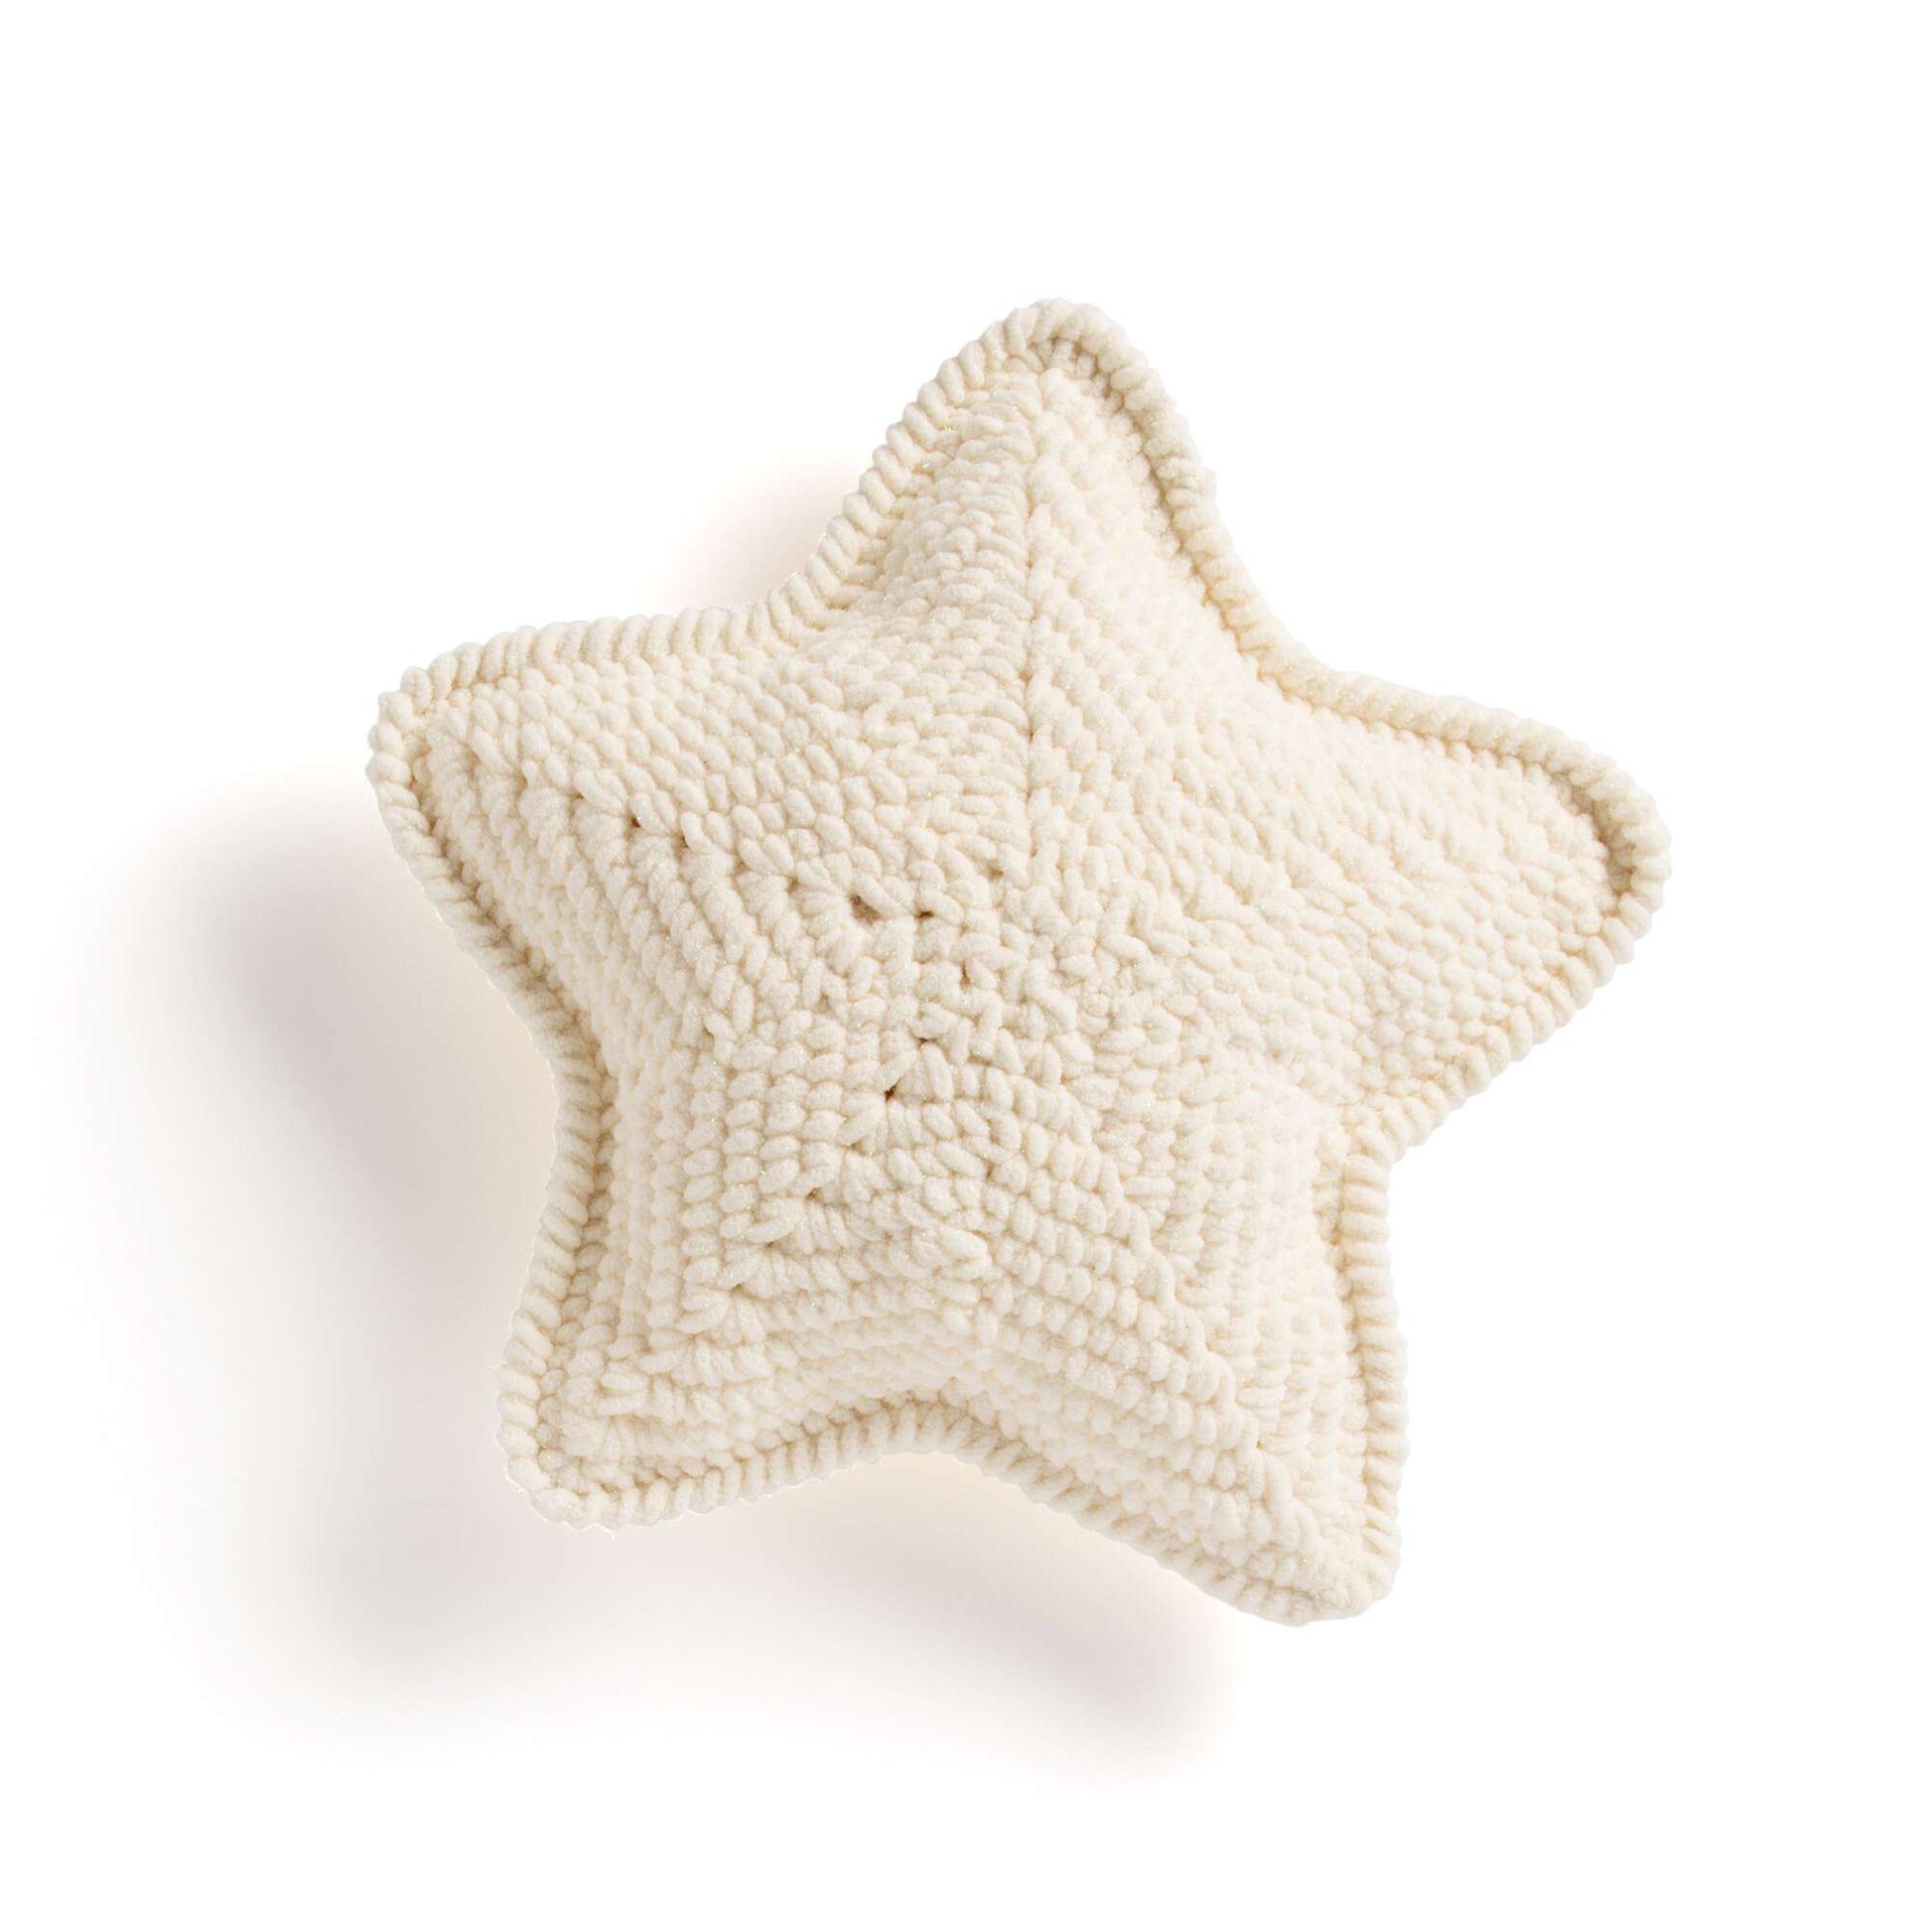 Bernat Crochet Lucky Star Pillow Pattern | Yarnspirations